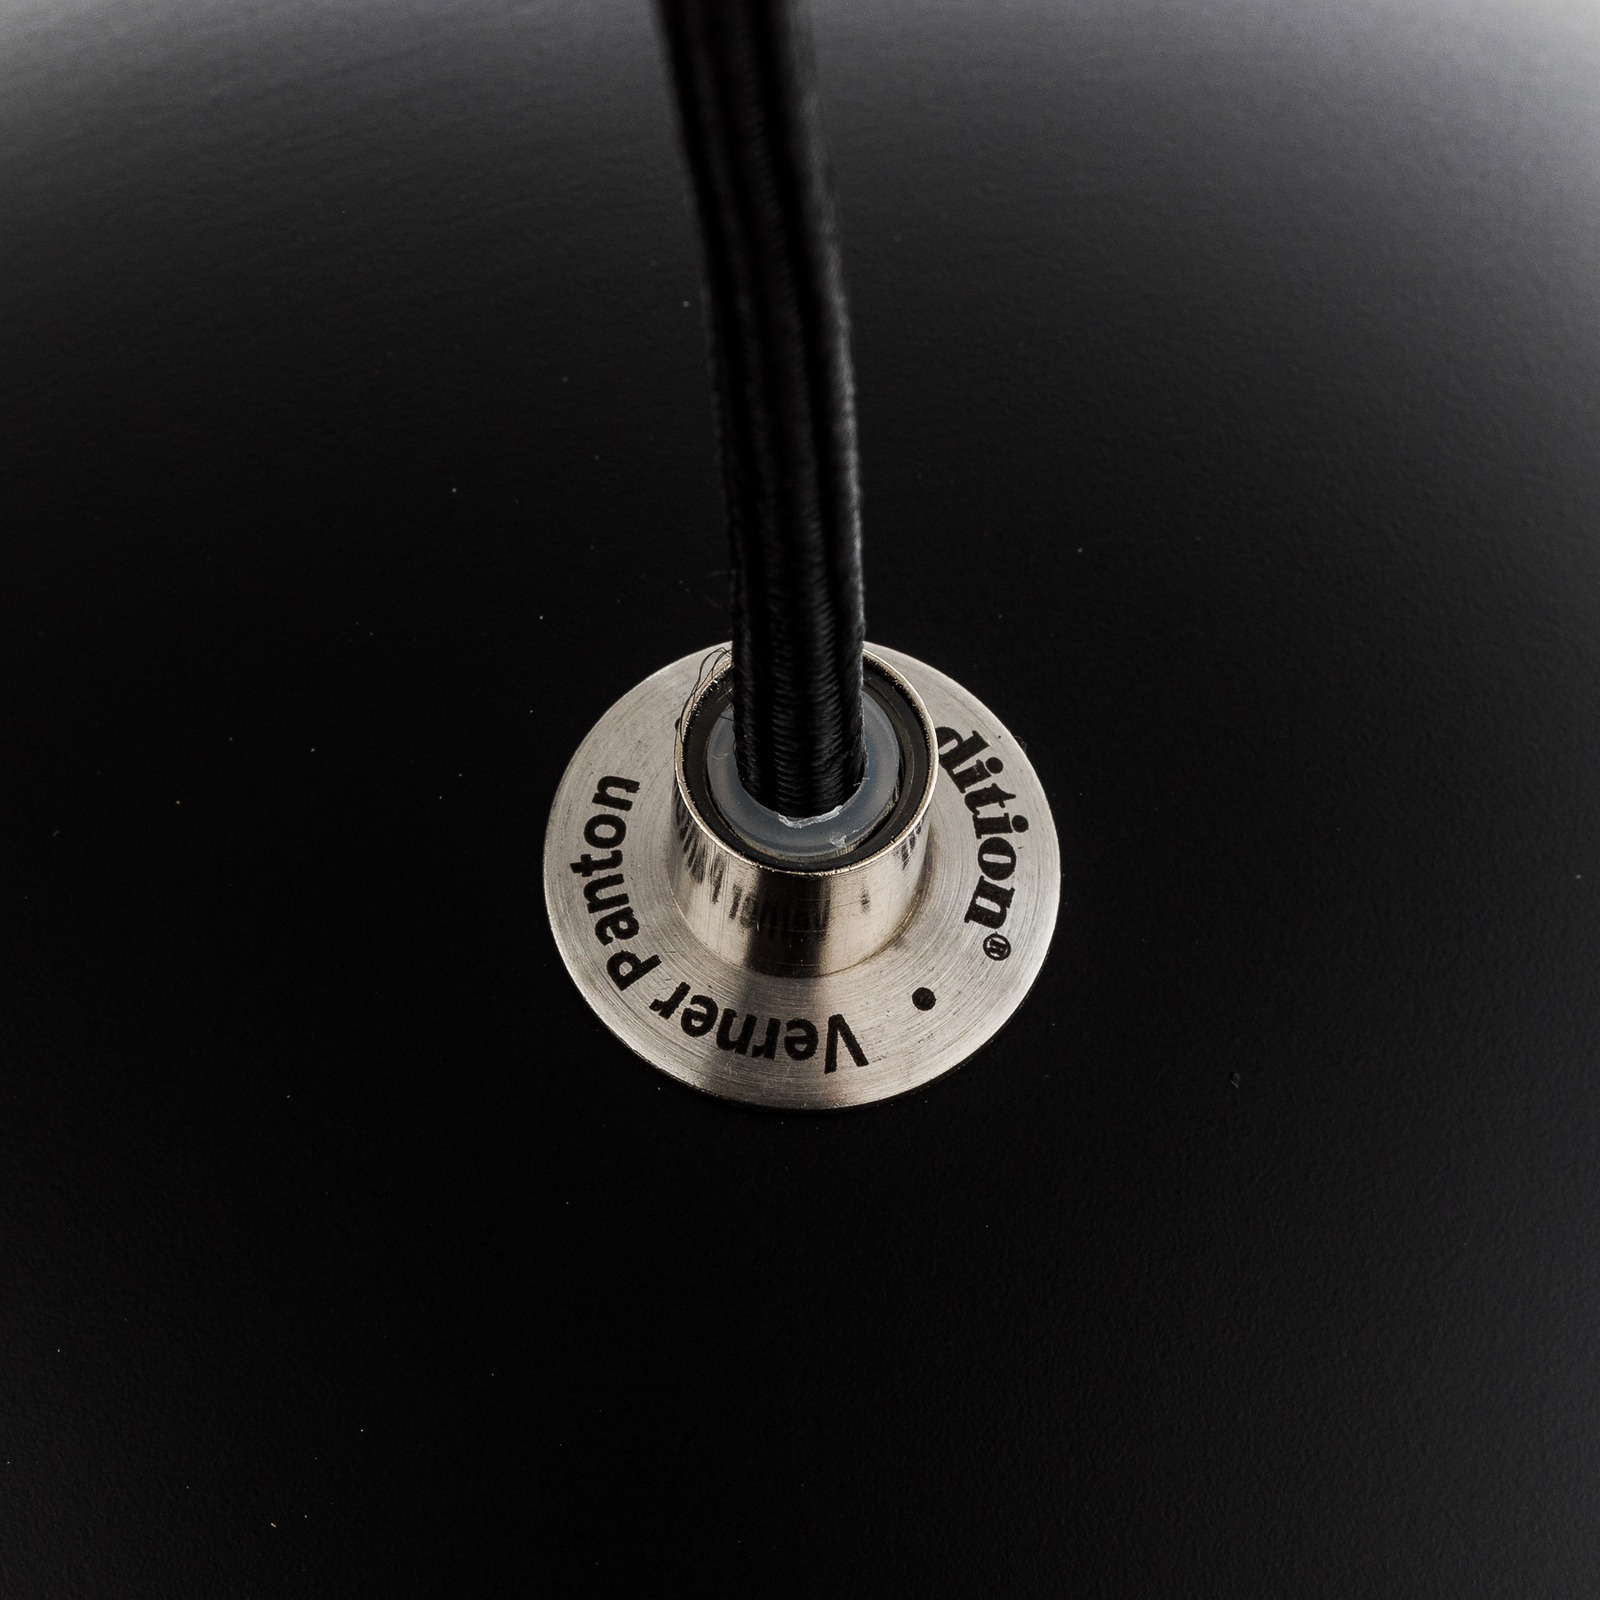 &Tradycyjna lampa wisząca Topan VP6, Ø 21 cm, czarny mat